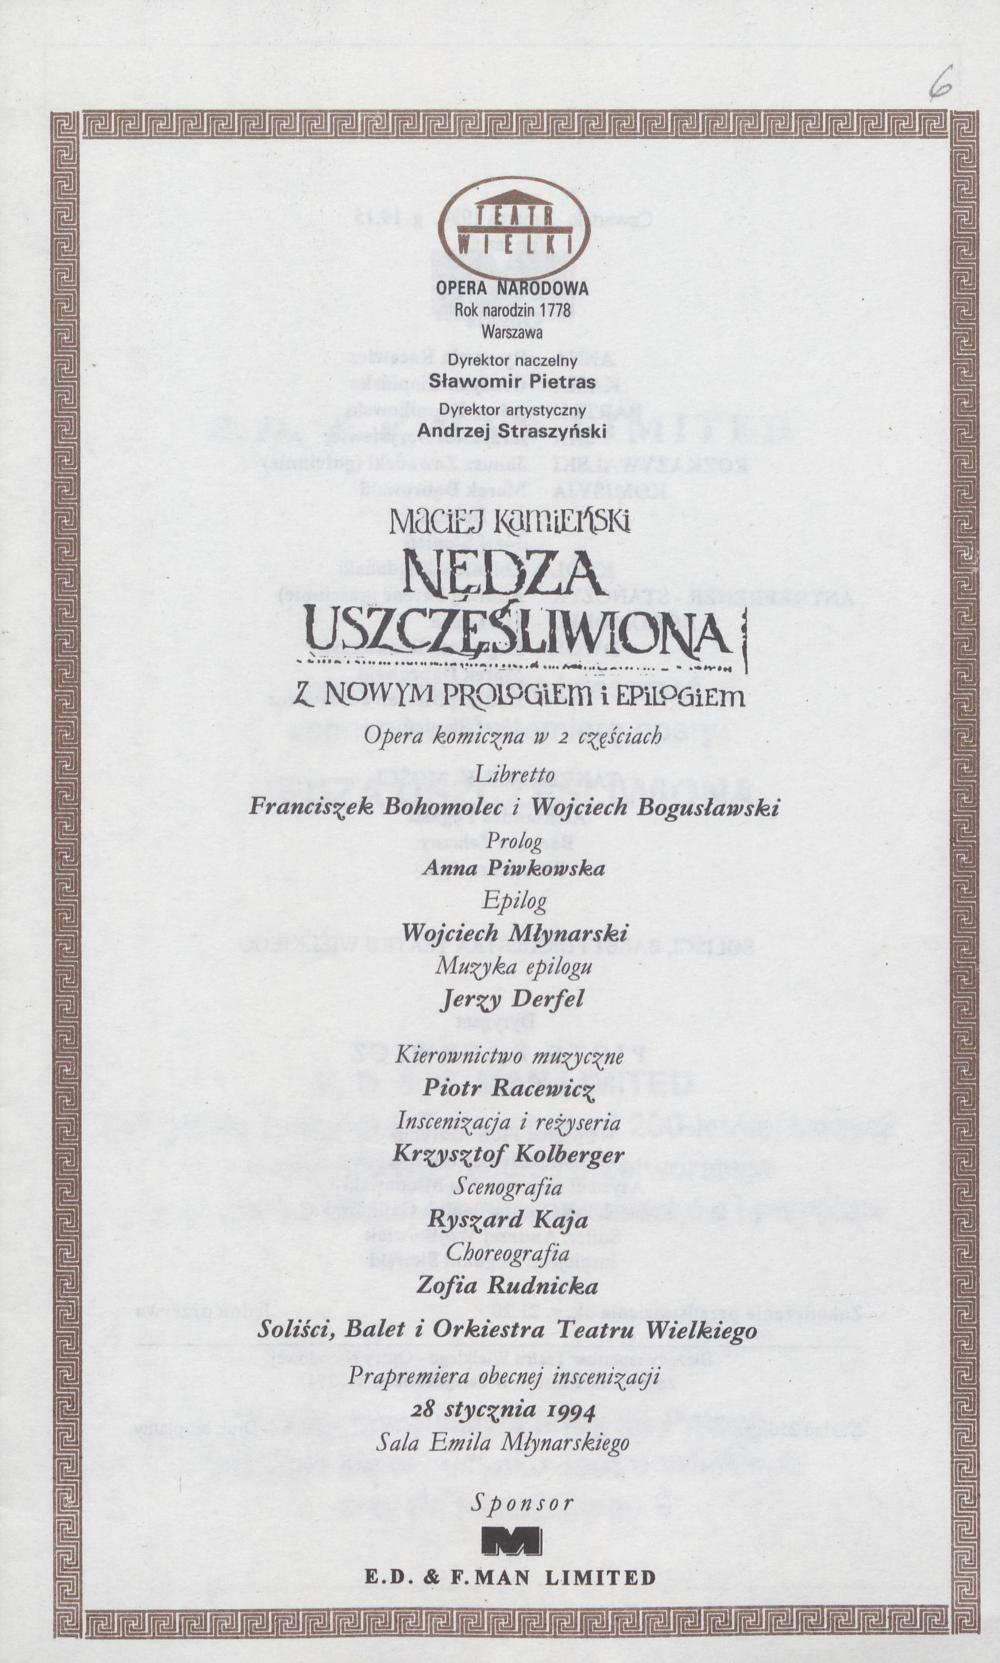 Wkładka obsadowa „Nędza uszczęśliwiona” Maciej Kamieński 03-03-1994